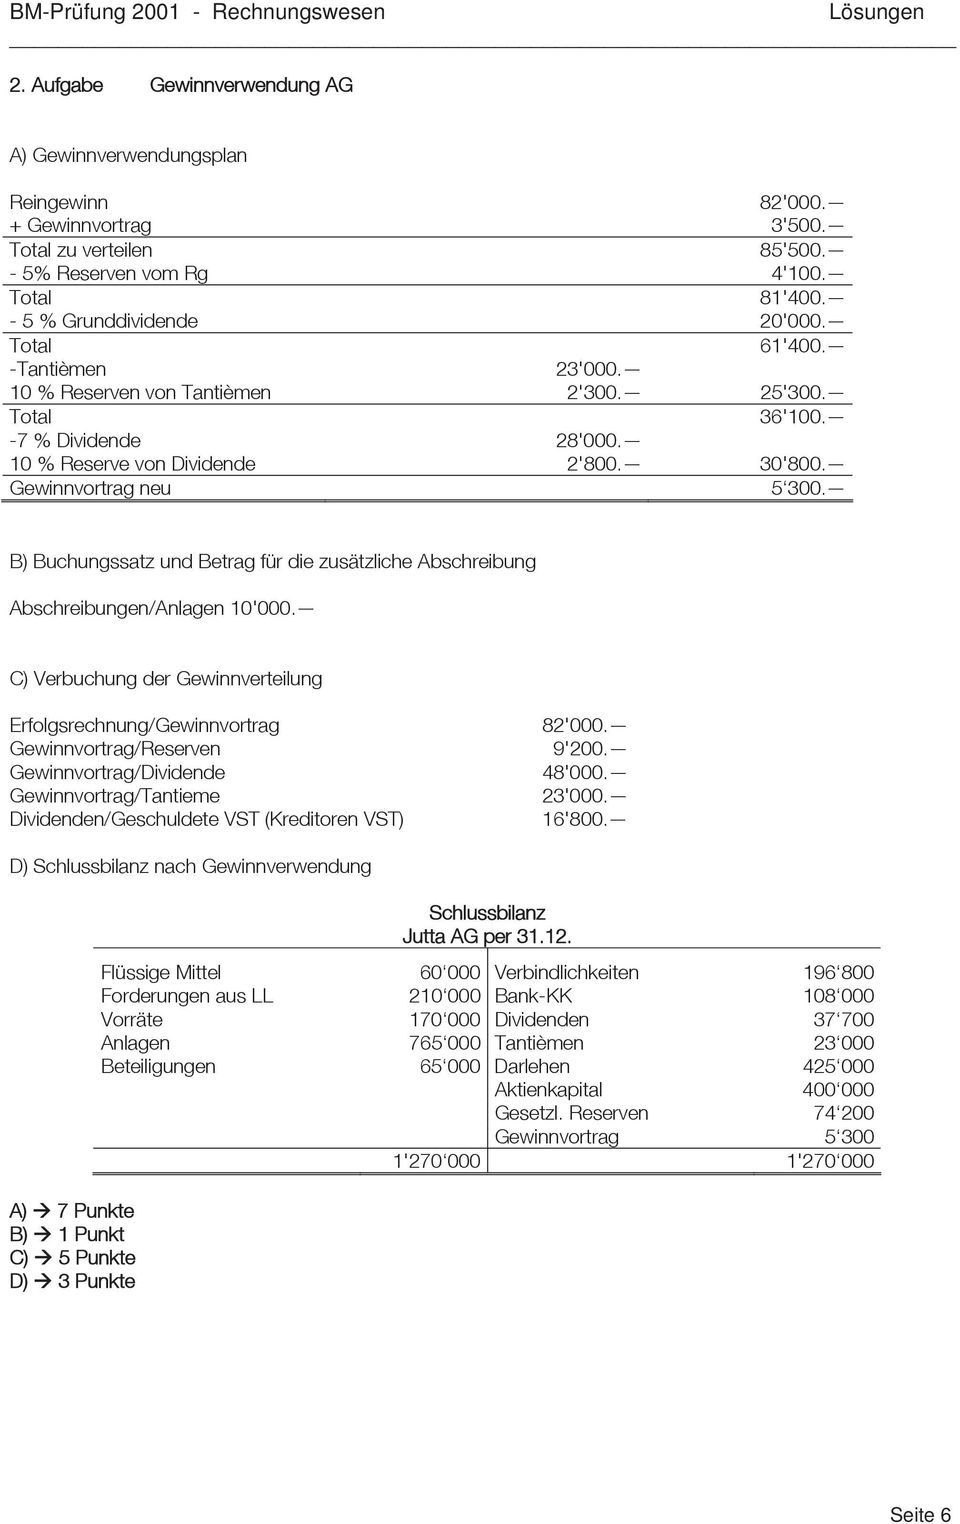 B) Buchungssatz und Betrag für die zusätzliche Abschreibung Abschreibungen/Anlagen 10'000.